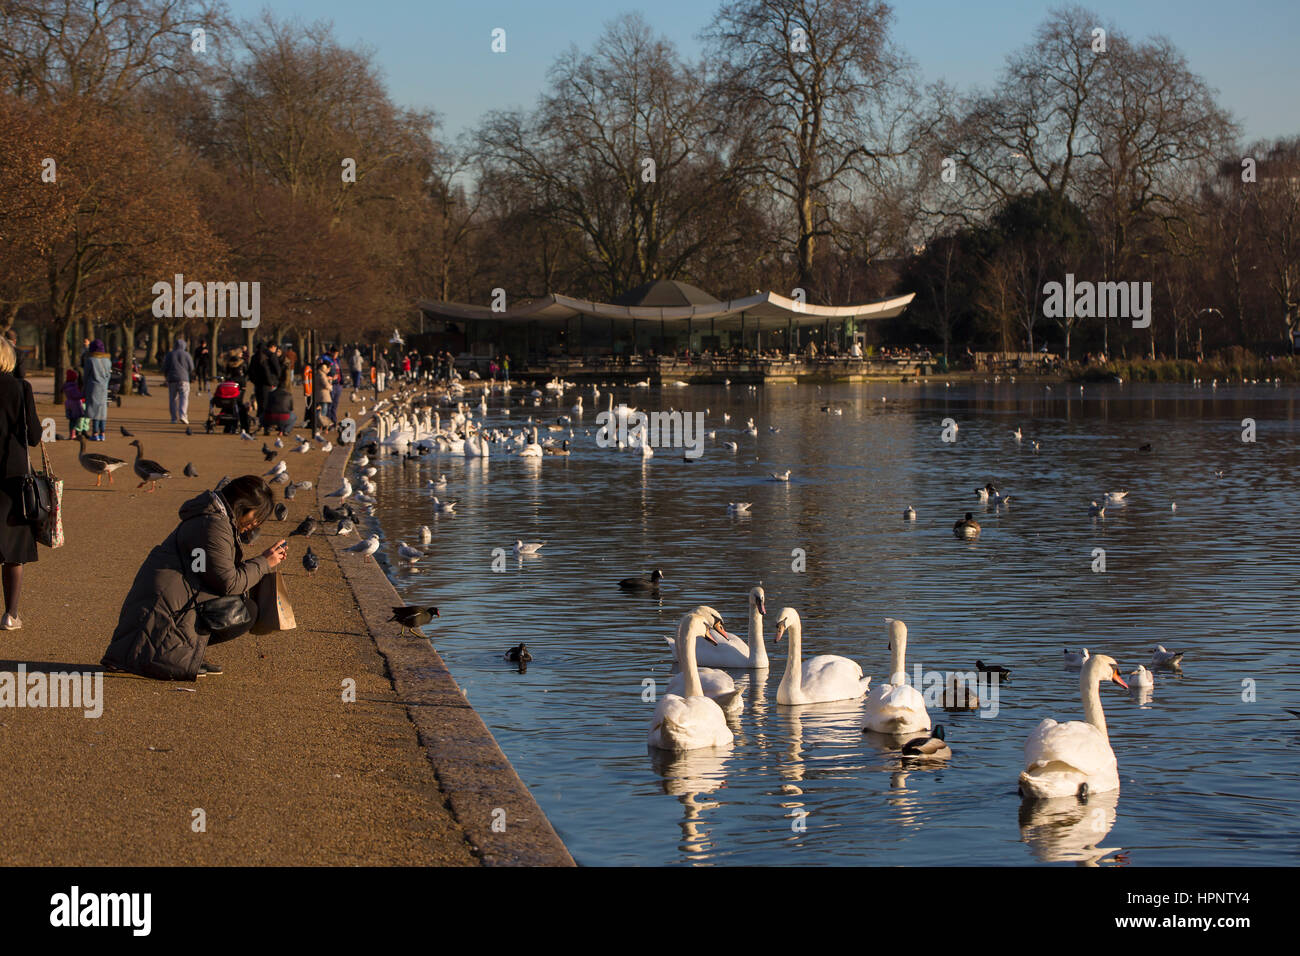 Park à Londres. Un café dans un parc à Londres est un endroit où les oiseaux sauvages se rassemblent à l'alimentation d'être par les passants. Les arbres dénudés de parler winte Banque D'Images